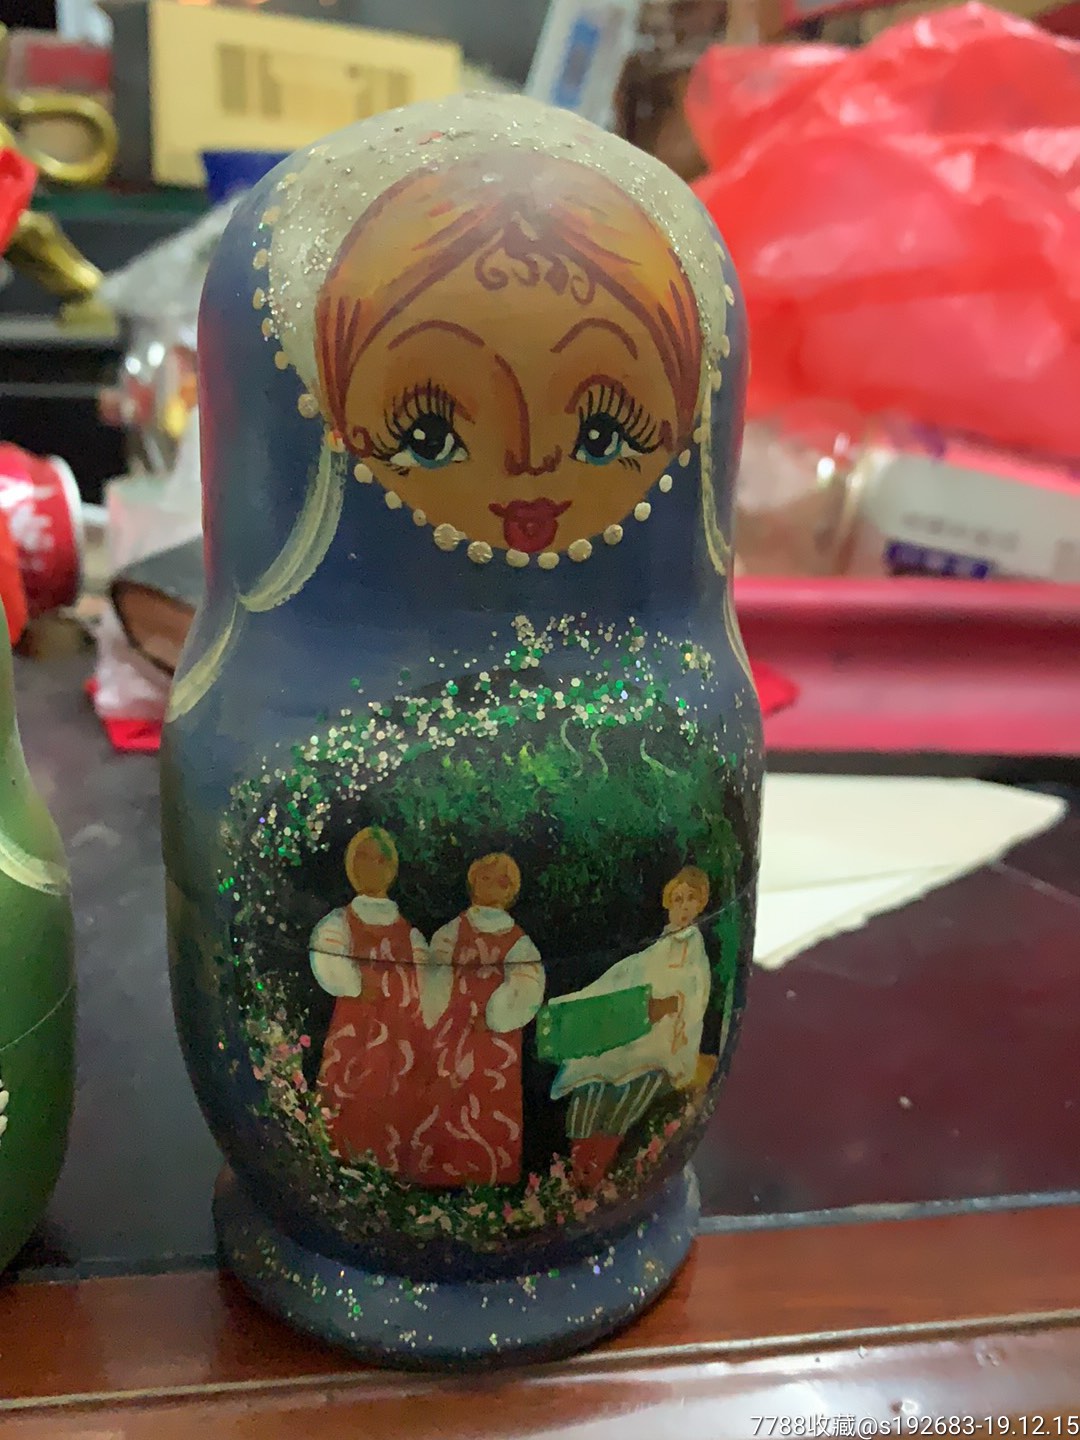 厂家直销 俄罗斯套娃手工艺品摆件 仿真人物套娃木质儿童玩具模型-阿里巴巴